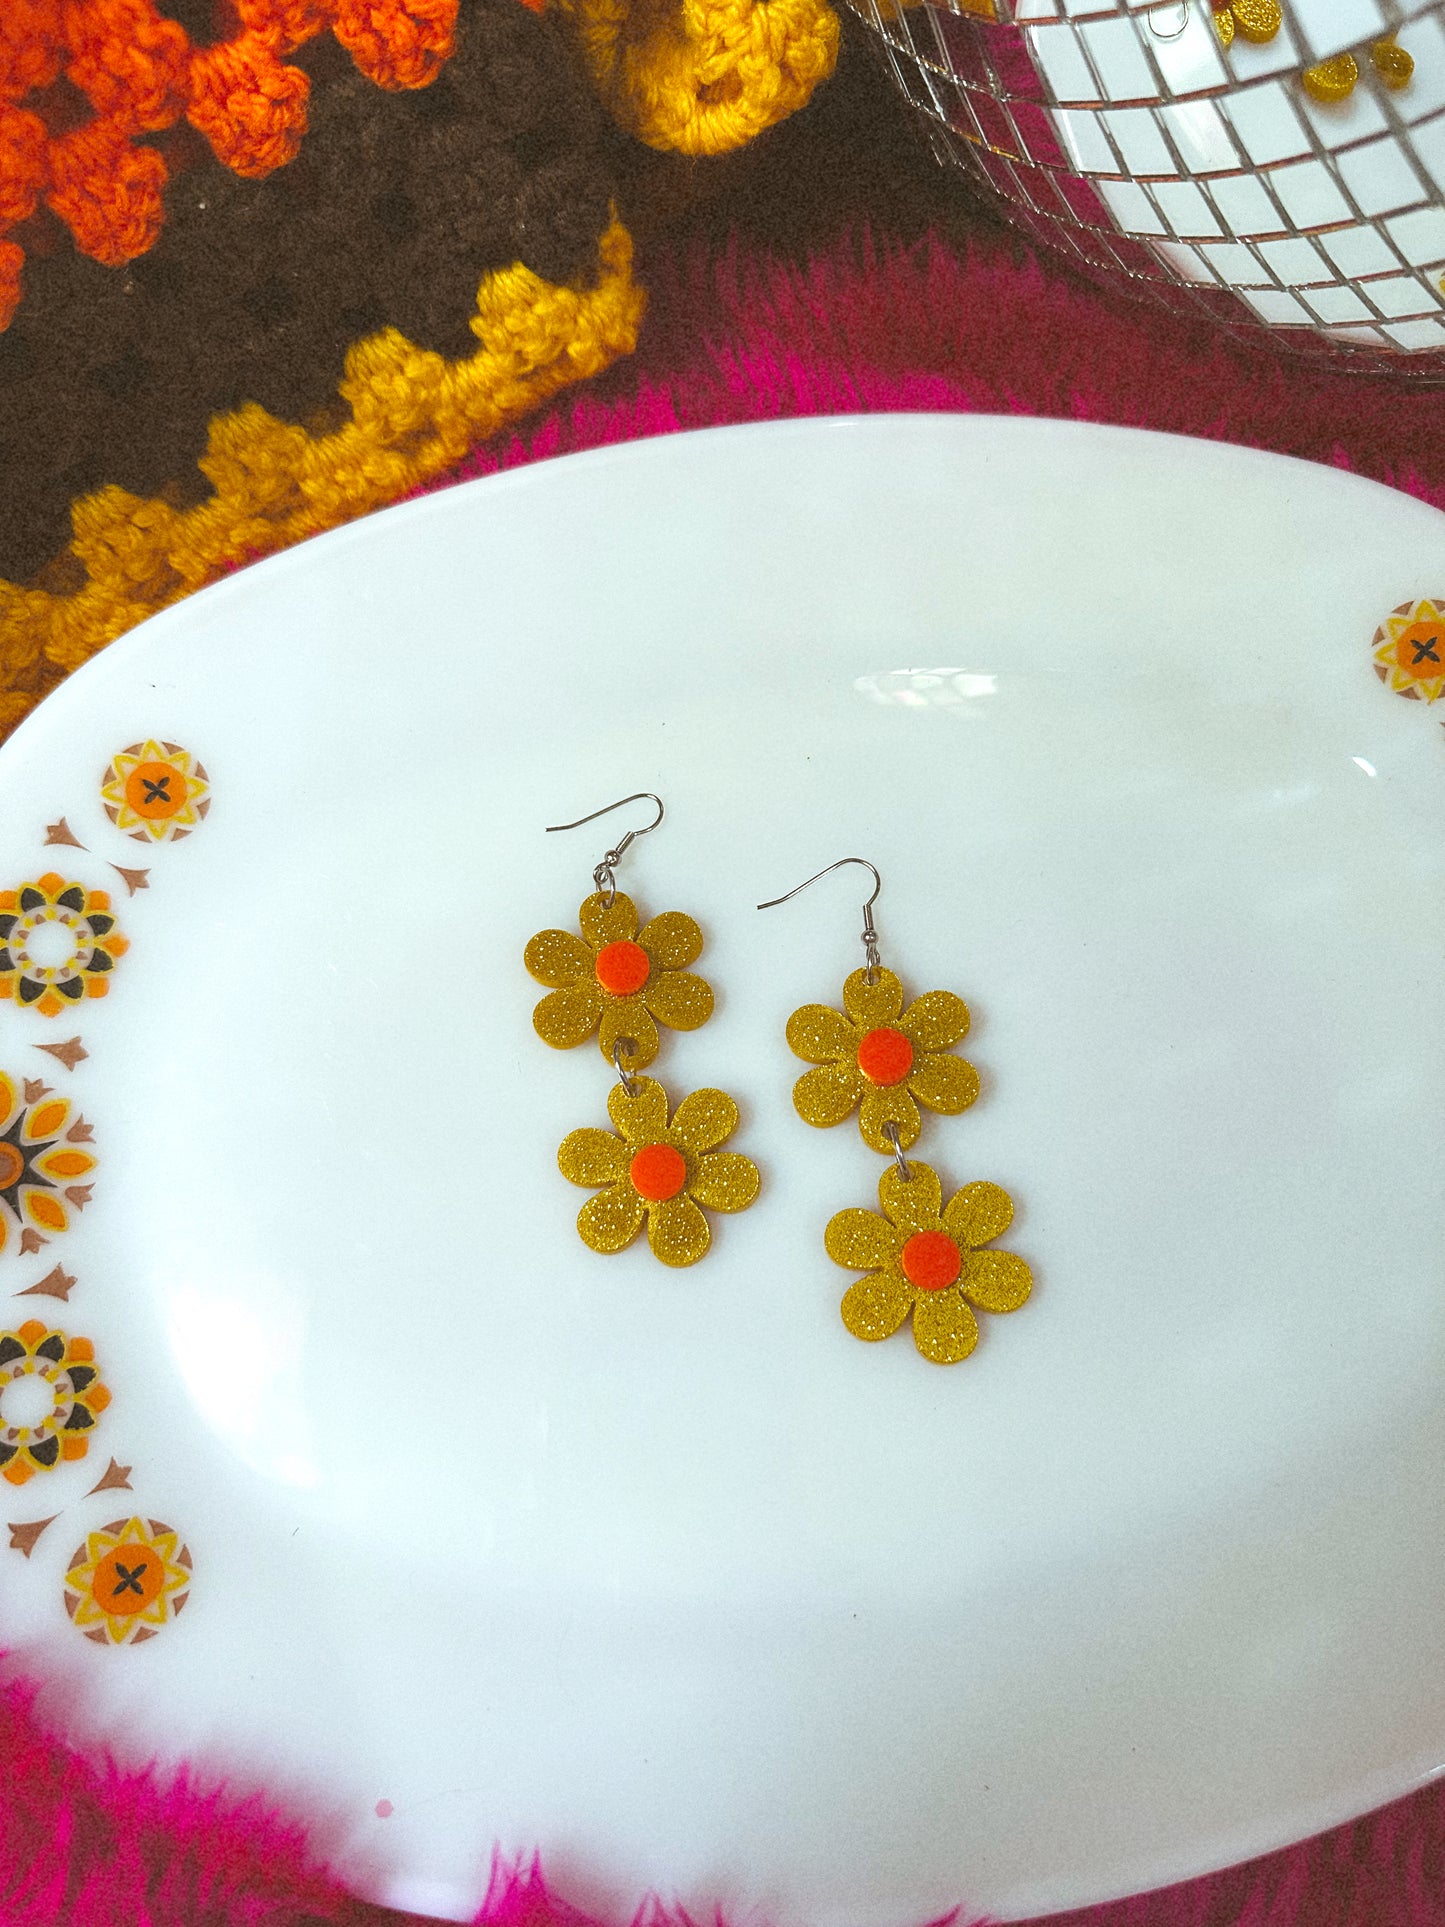 Sample little yellow double daisy earrings